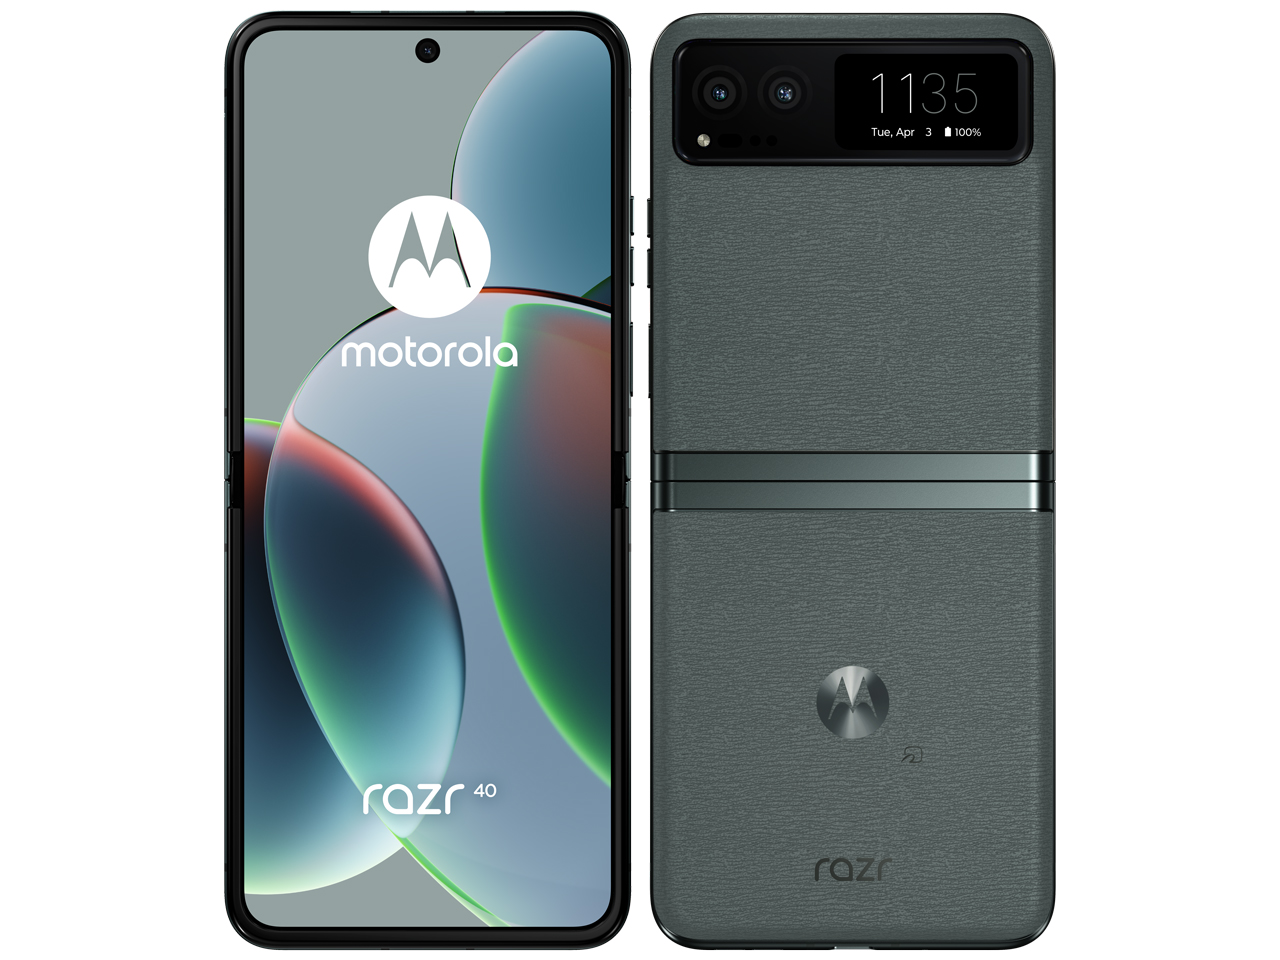 「新品 未開封品」SIMフリー モトローラ Motorola razr 40  [8GB/256GB][セージグリーン][バニラクリーム][折りたたみスマートフォン]